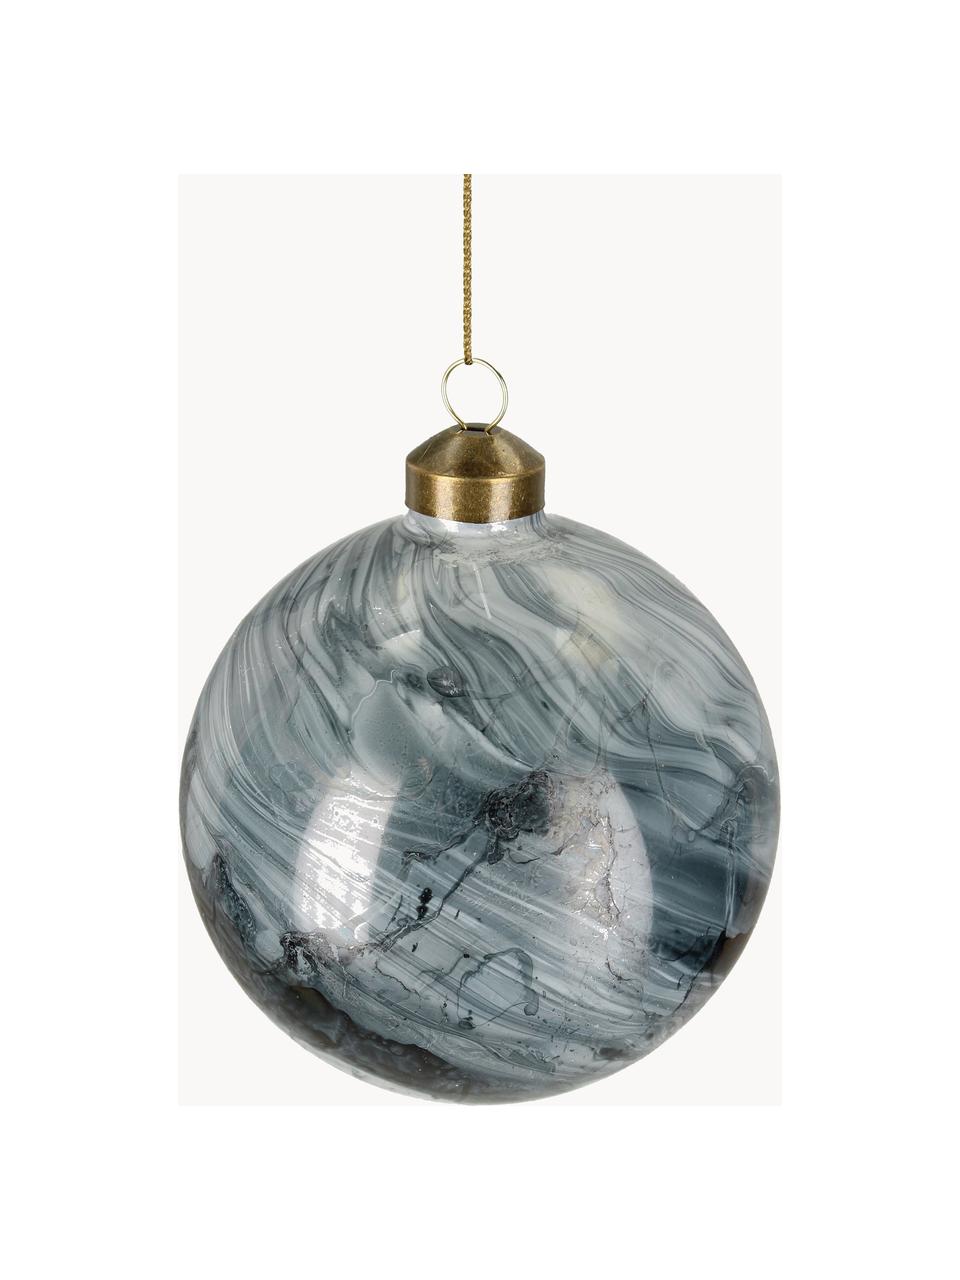 Weihnachtskugeln Marble in Marmoroptik, 6 Stück, Glas, Graublau, Weiß, dunkel, Ø 10 cm